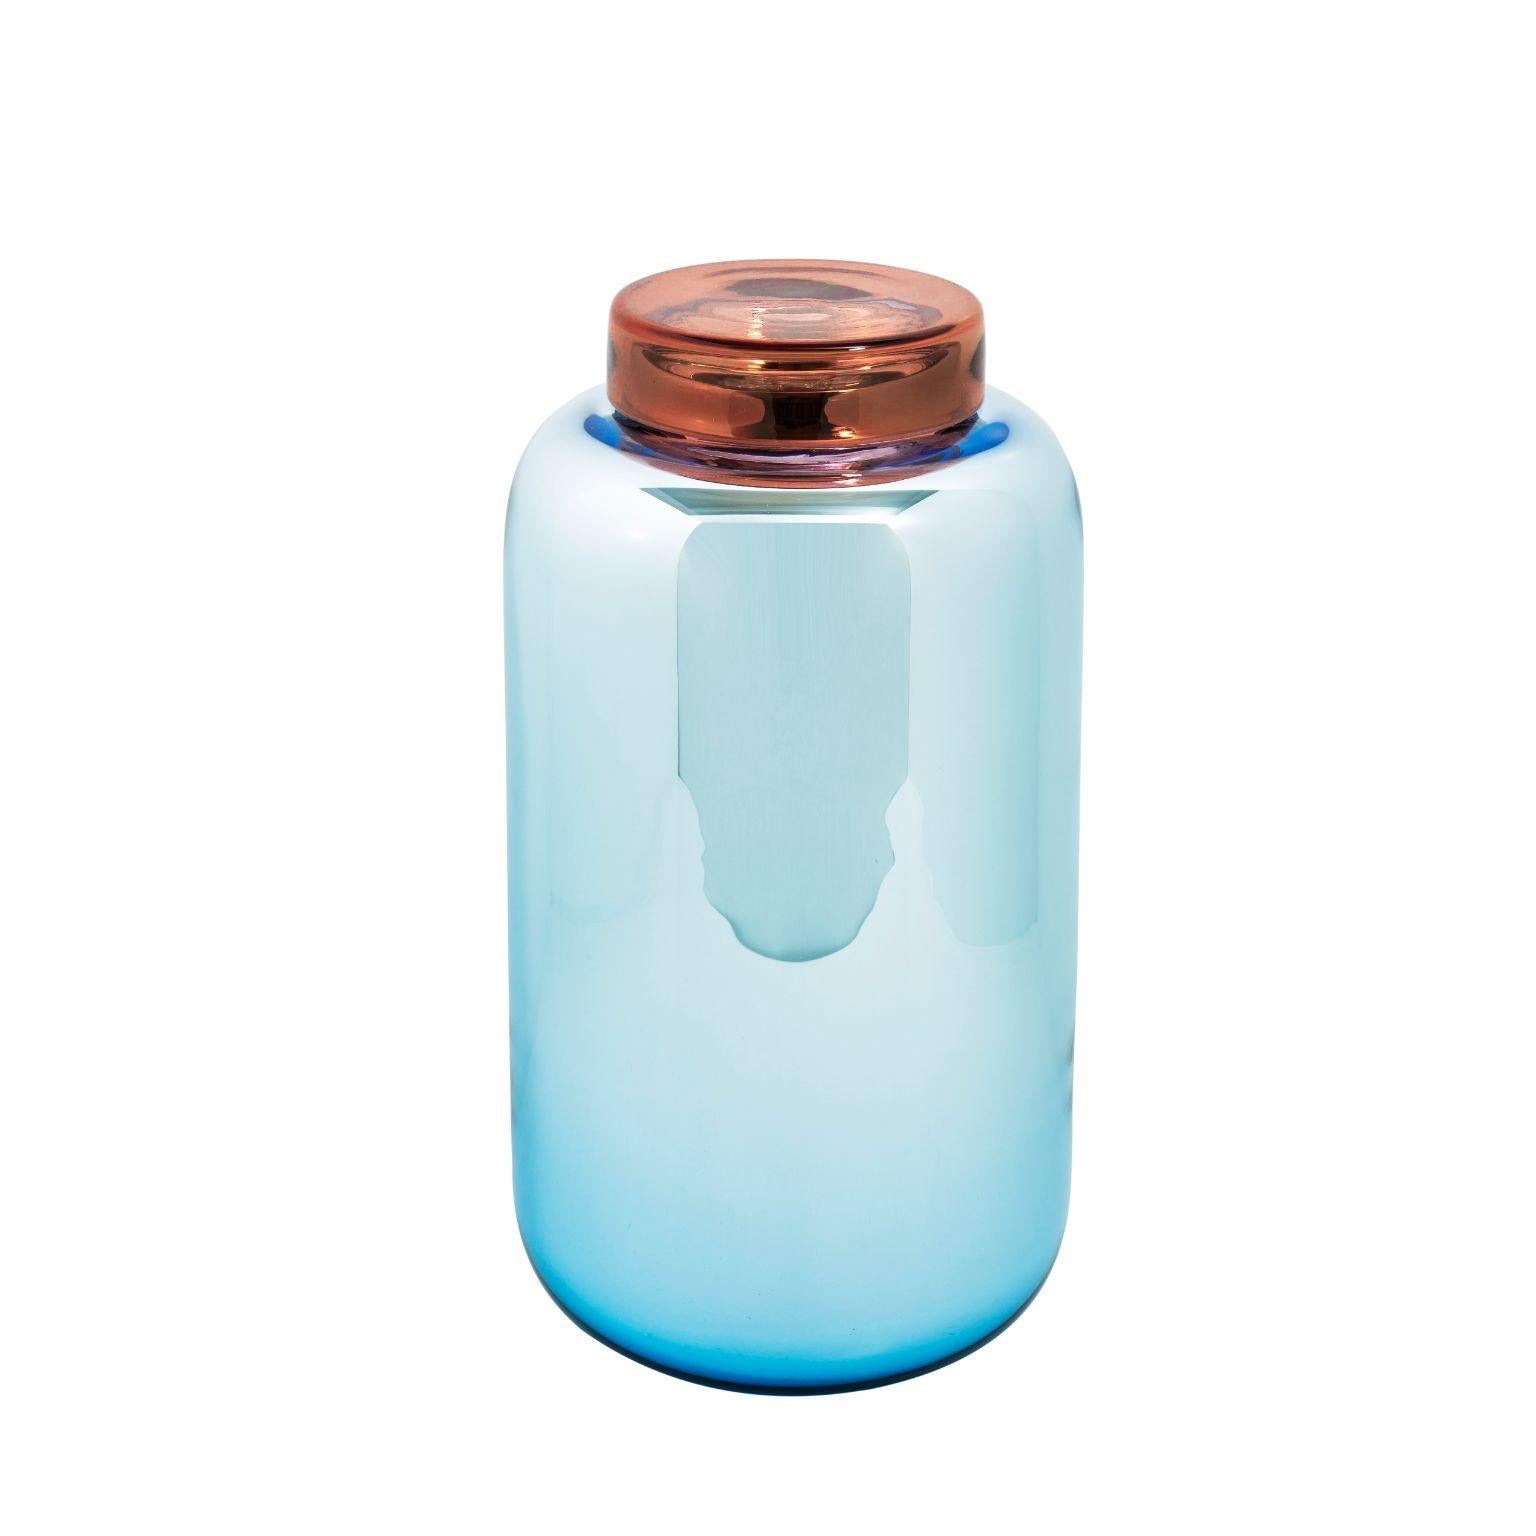 Container vase et boîte bleu rouge à haute luminosité de Pulpo
Dimensions : P16,5 x H30 cm.
MATERIAL : verre fait à la main.

Disponible également en différentes couleurs. 

Une collection décorative de formes courbes, pleine de vie, entre dans la